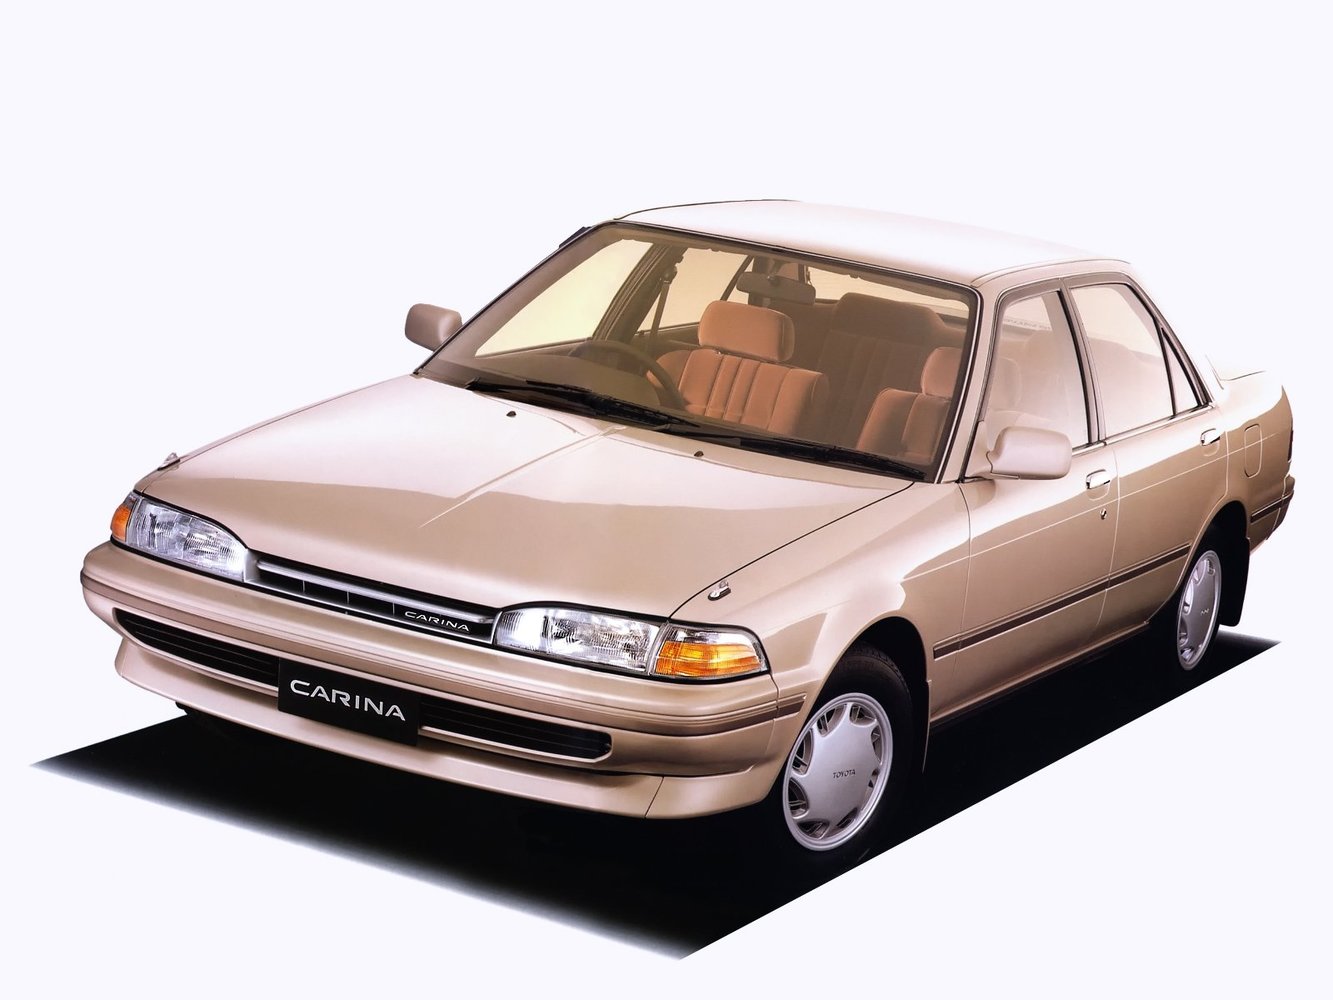 хэтчбек 5 дв. Toyota Carina 1988 - 1992г выпуска модификация 2.0 AT (121 л.с.)